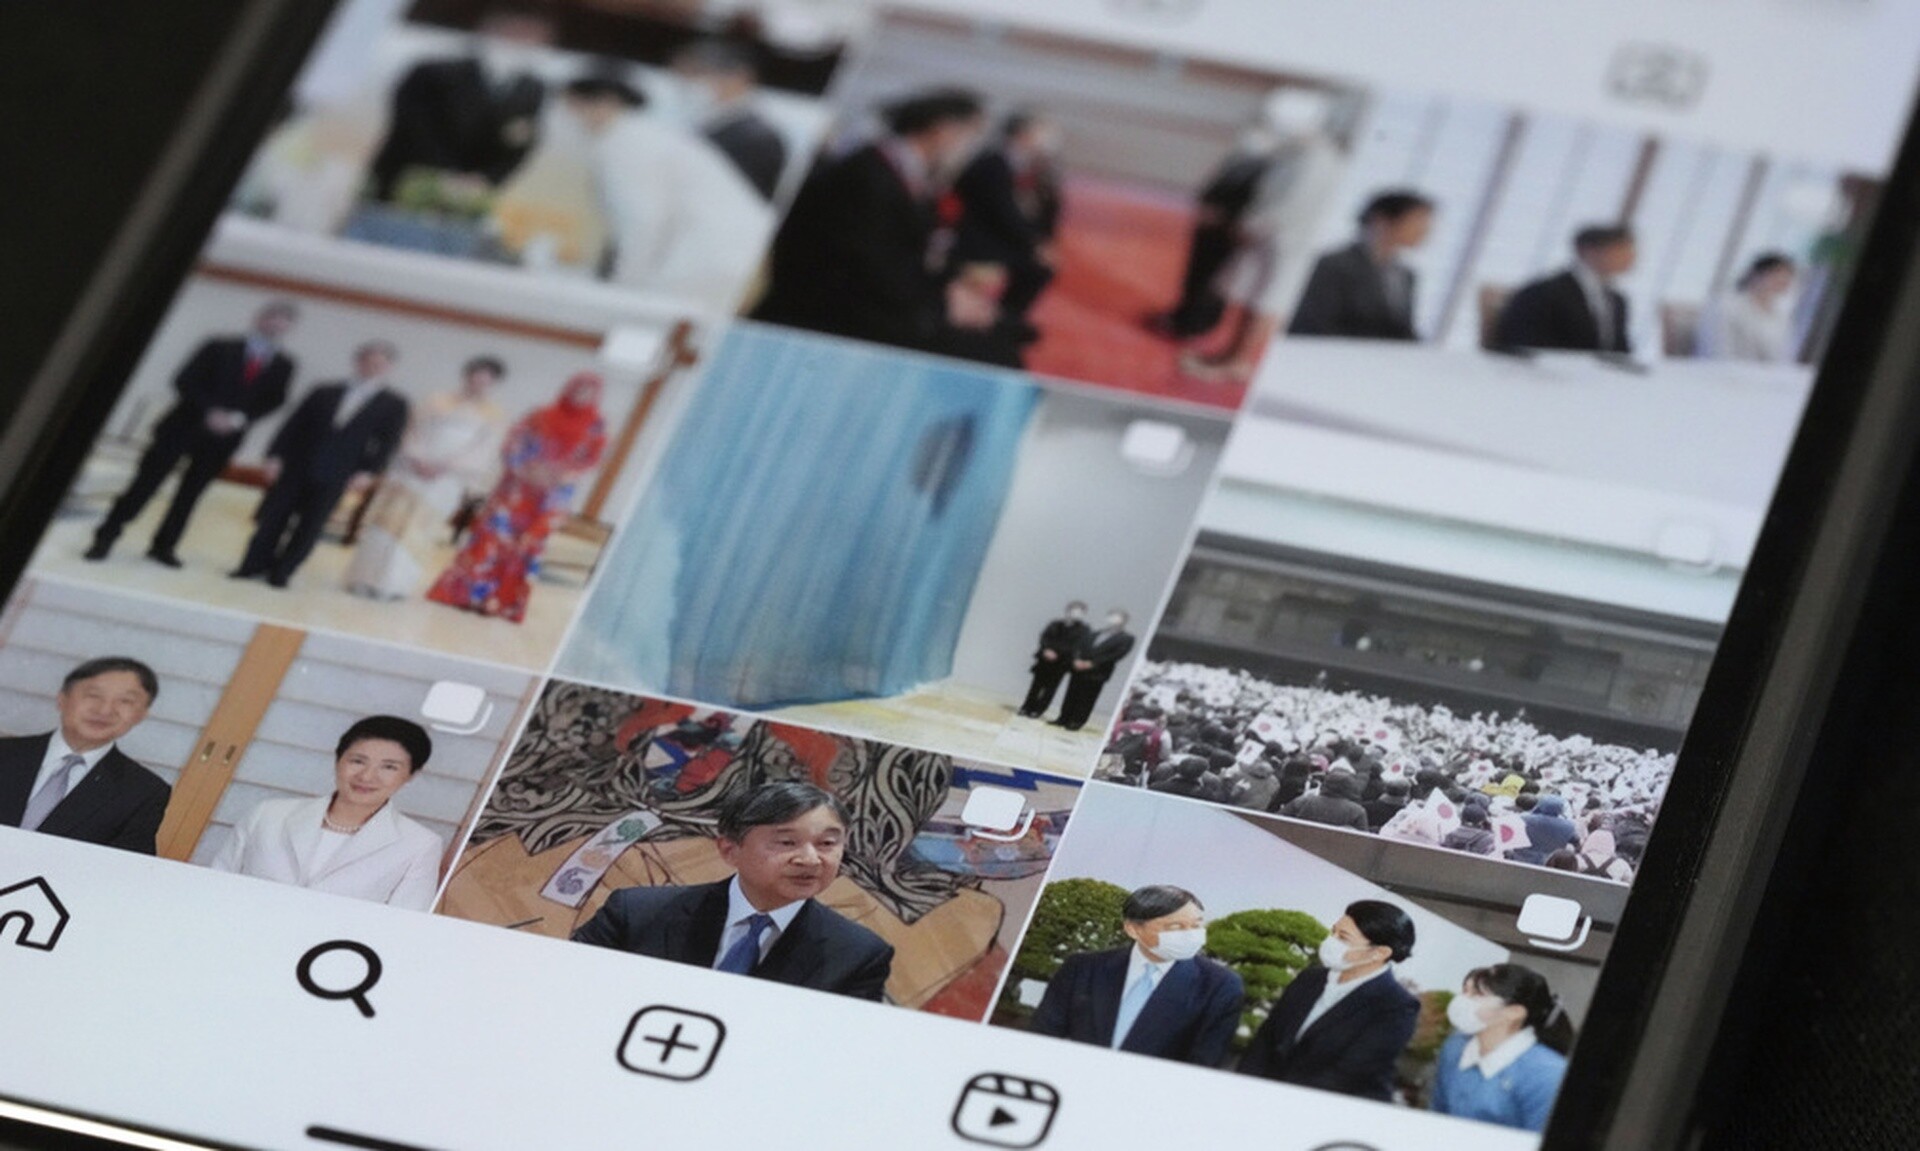 Ιαπωνία: Ο αυτοκράτορας Ναρουχίτο «μπήκε» στο Instagram - Ο «Θρόνος των Χρυσανθέμων» εκσυγχρονίζεται